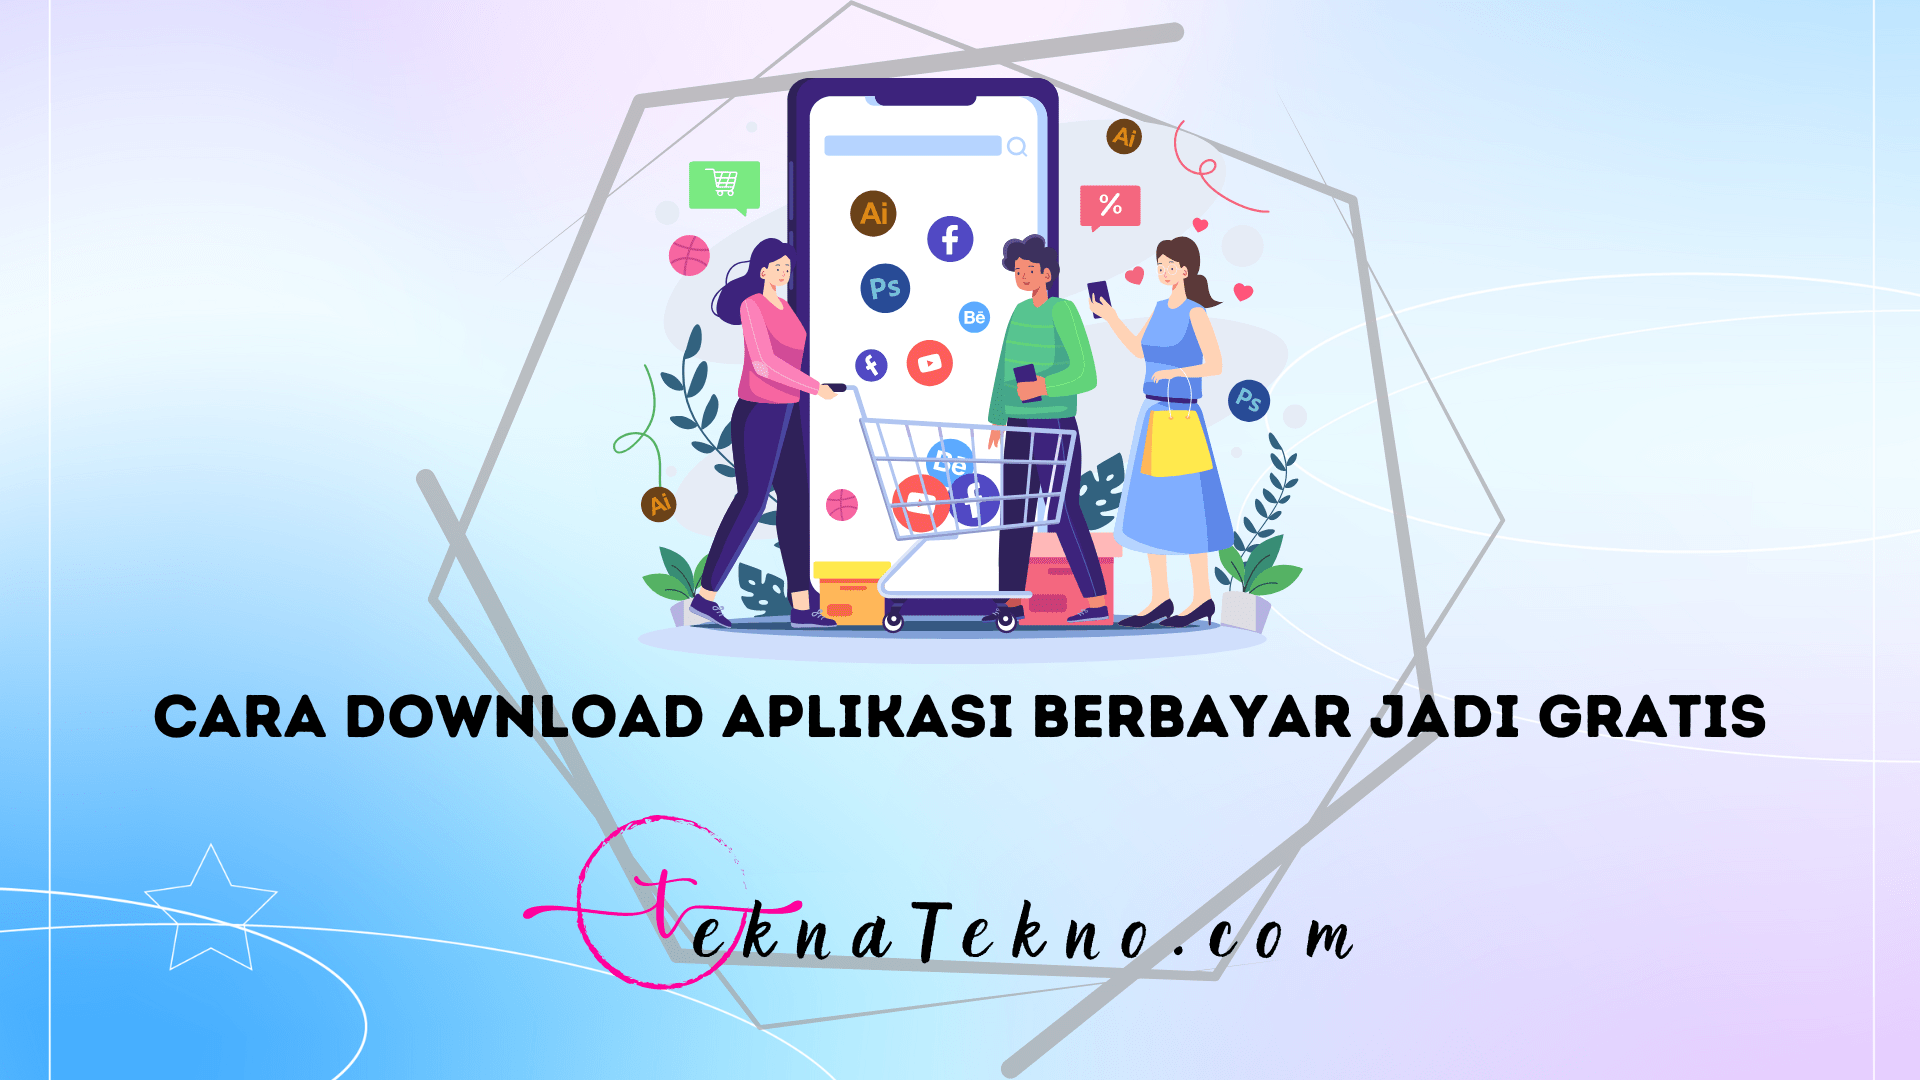 3 Cara Download Aplikasi Berbayar Jadi Gratis di Play Store